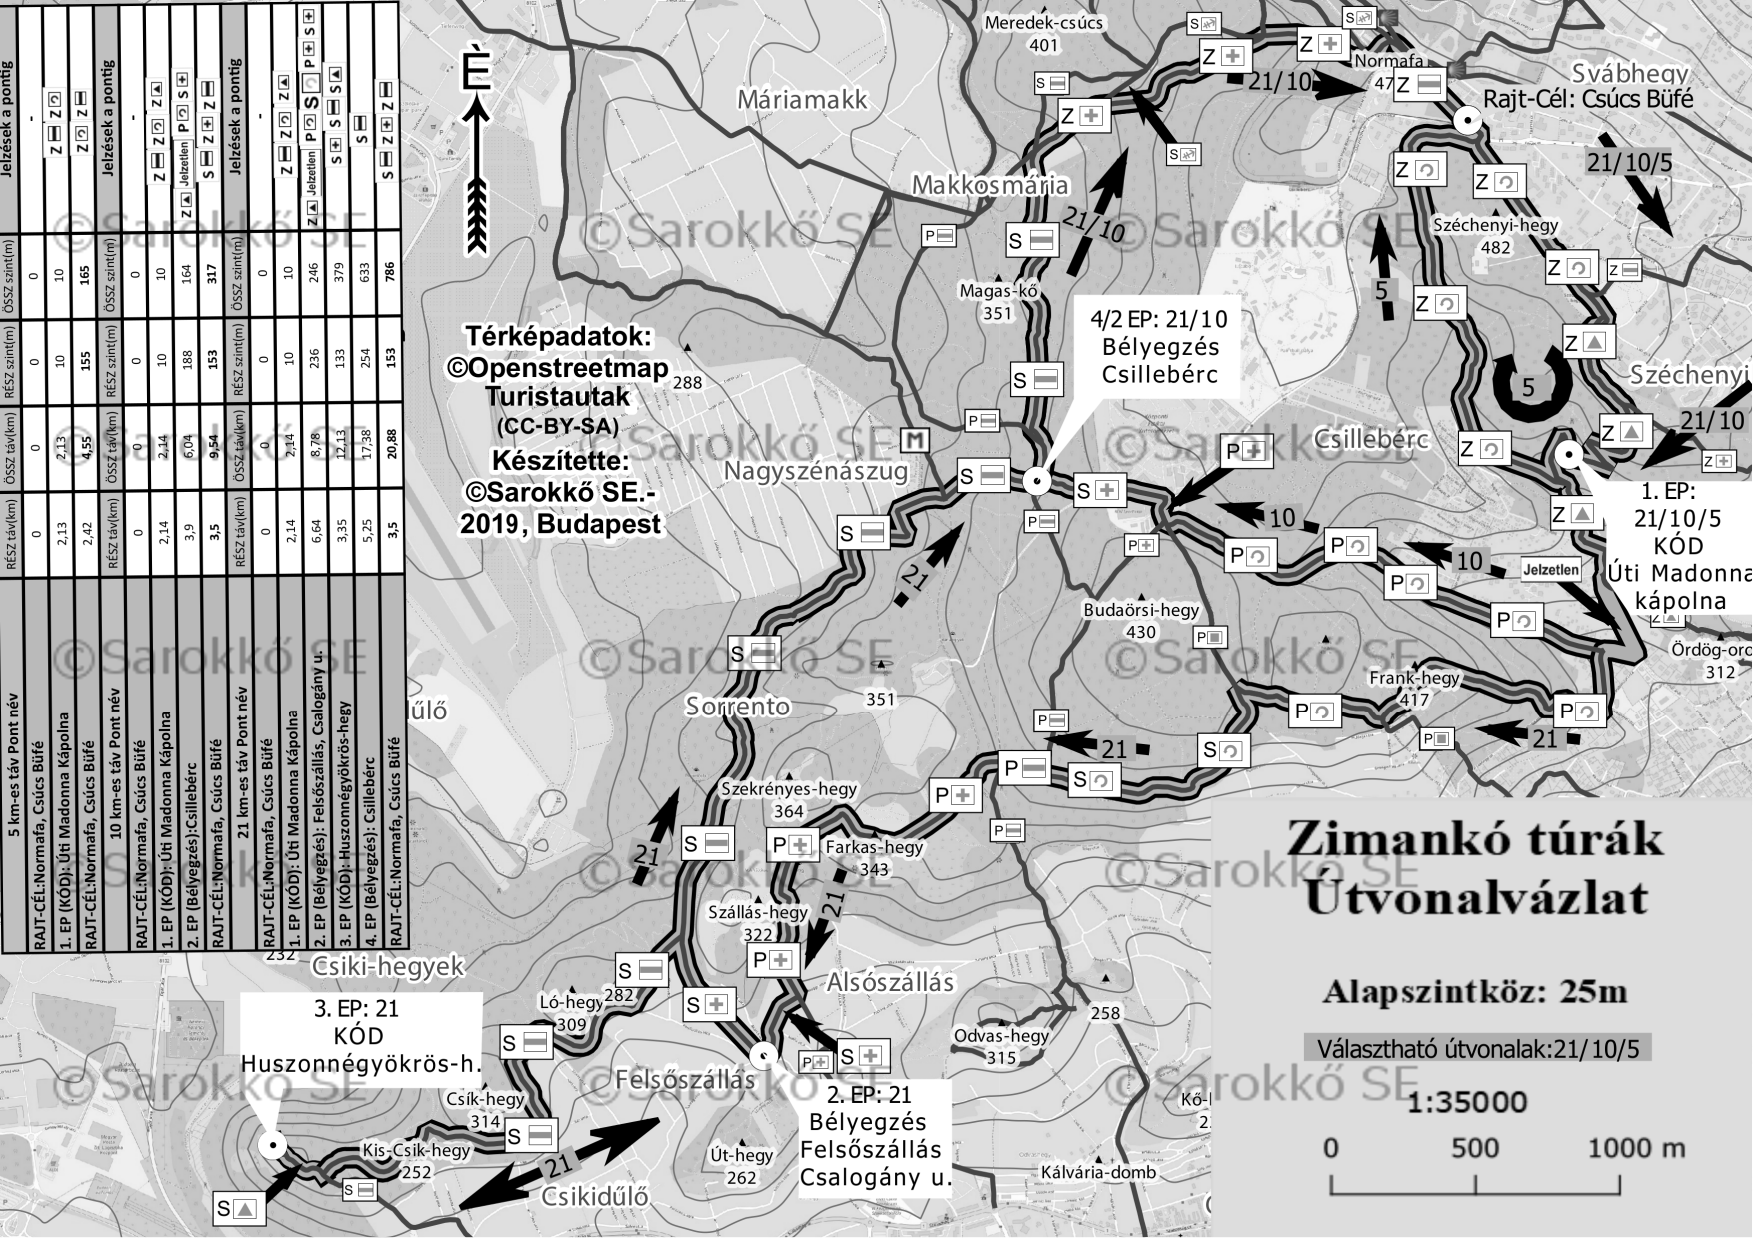 Zimankó teljesítménytúrák szürkeárnyalatos útvonalvázlata